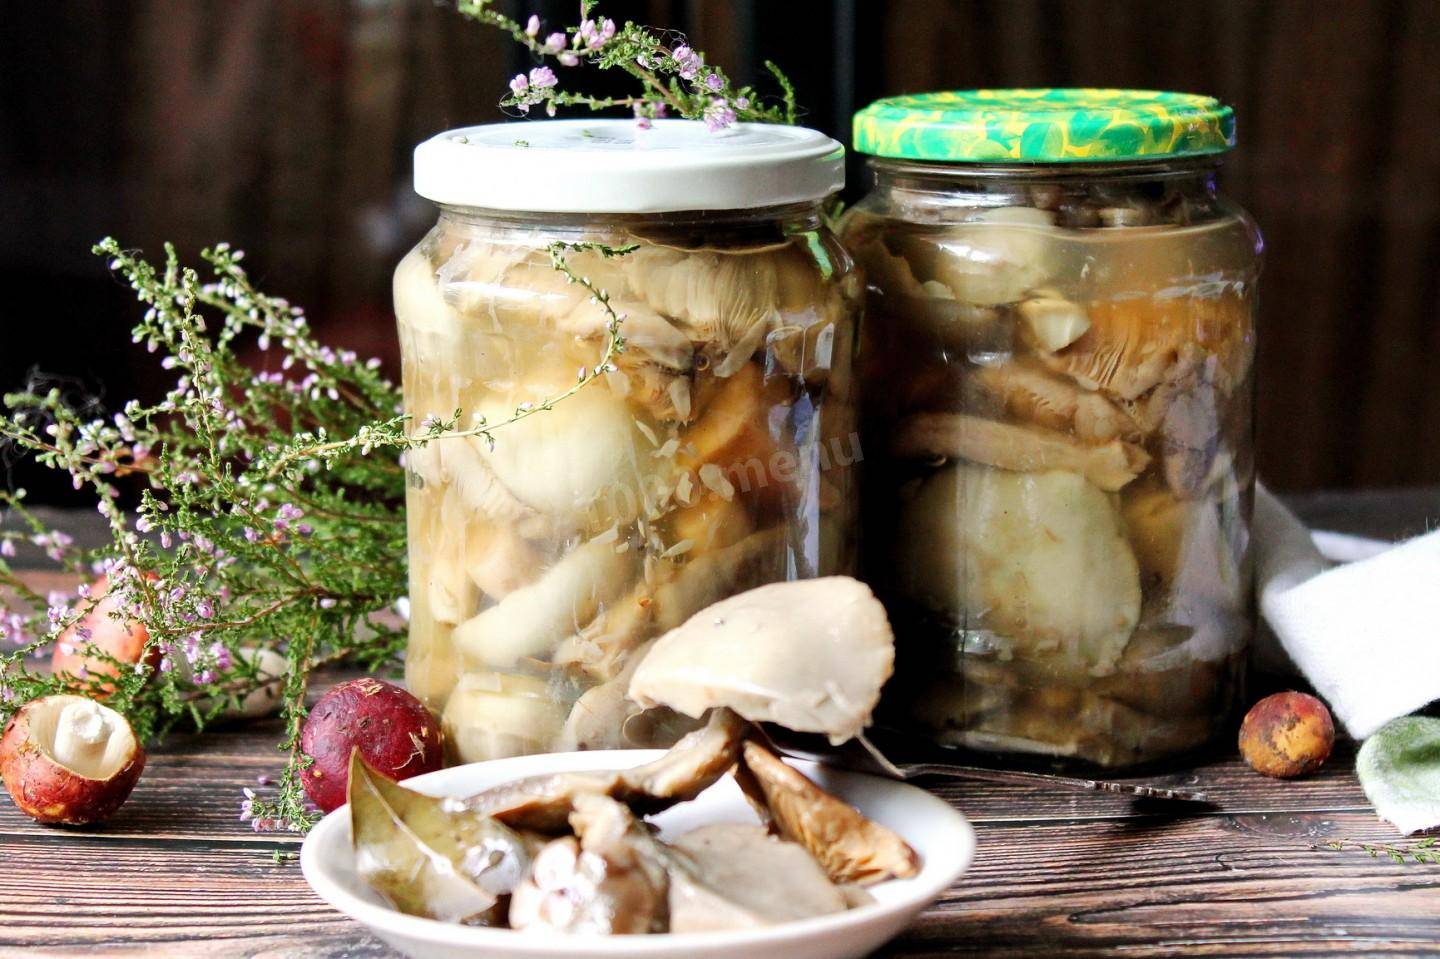 Как варить польские грибы | сколько варить польские грибы